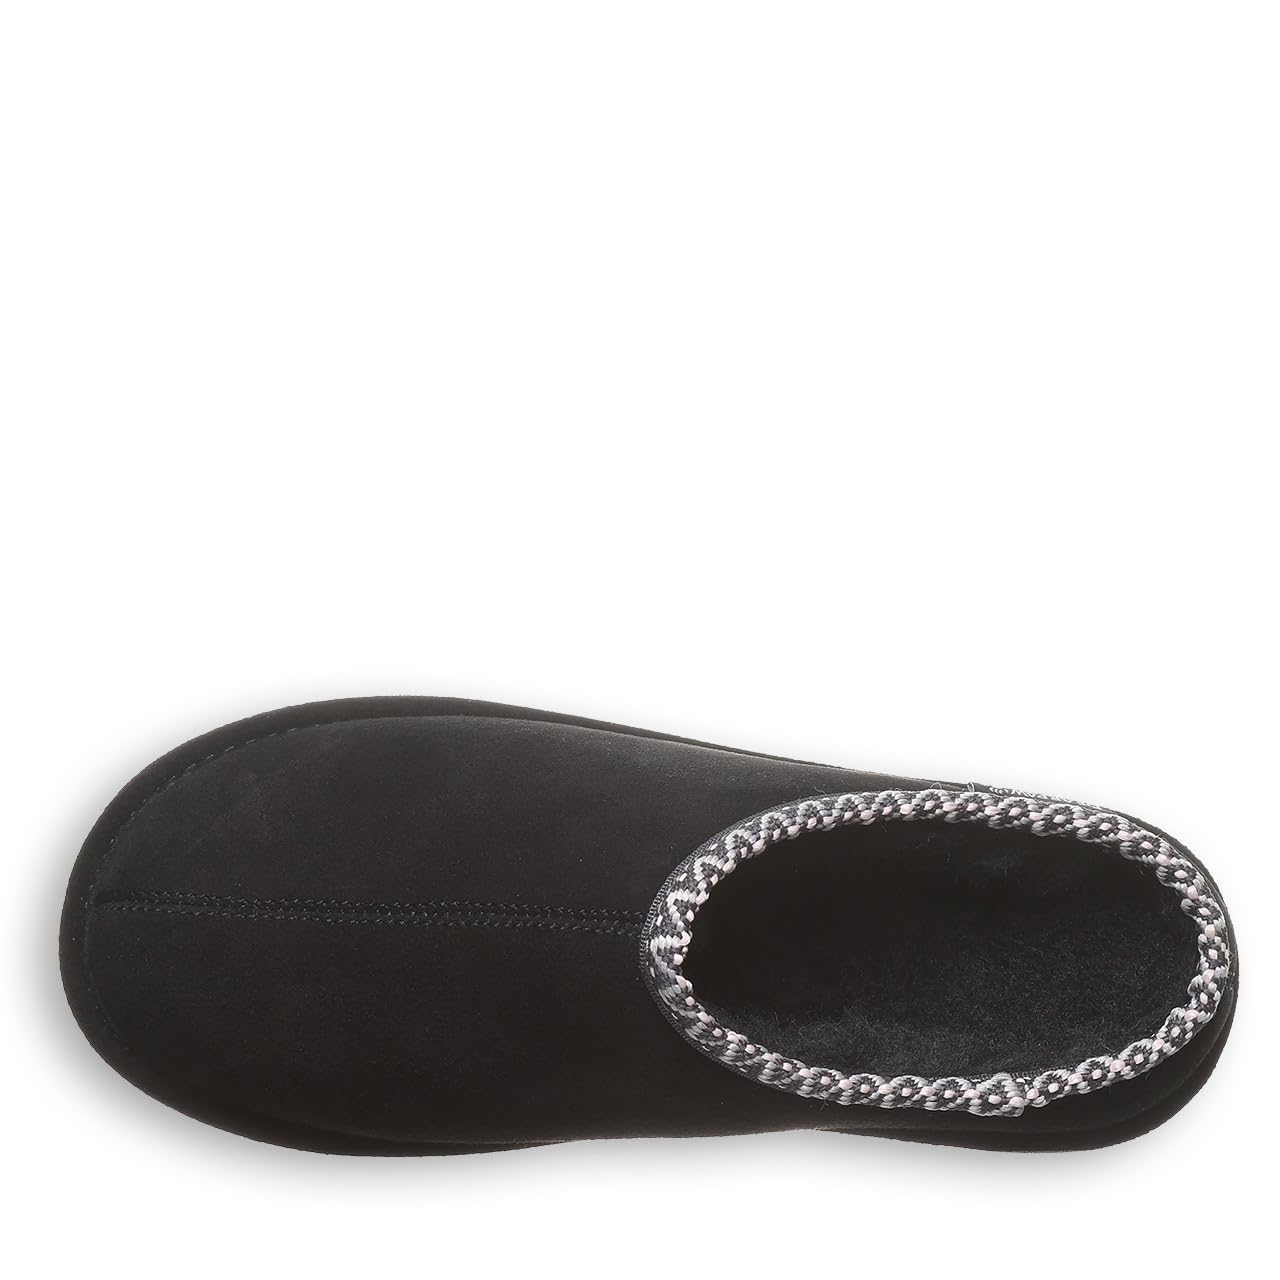 BEARPAW Women's Martis Slipper | Women's Slipper | Women's Shoe | Comfortable & Lightweight | Multiple Colors & Sizes